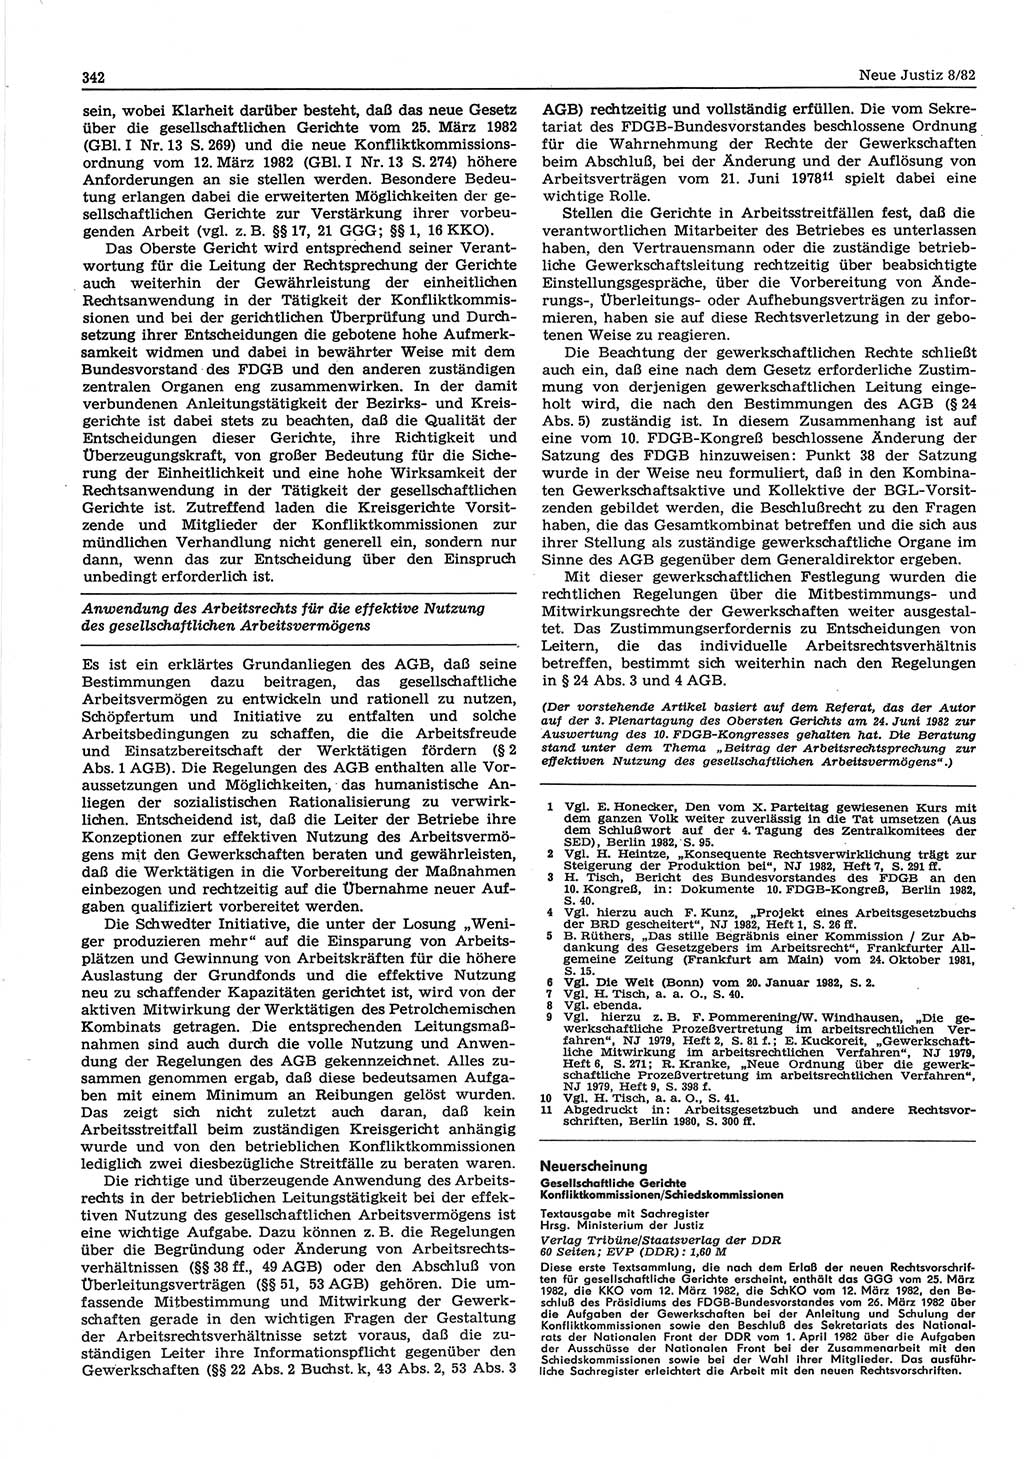 Neue Justiz (NJ), Zeitschrift für sozialistisches Recht und Gesetzlichkeit [Deutsche Demokratische Republik (DDR)], 36. Jahrgang 1982, Seite 342 (NJ DDR 1982, S. 342)